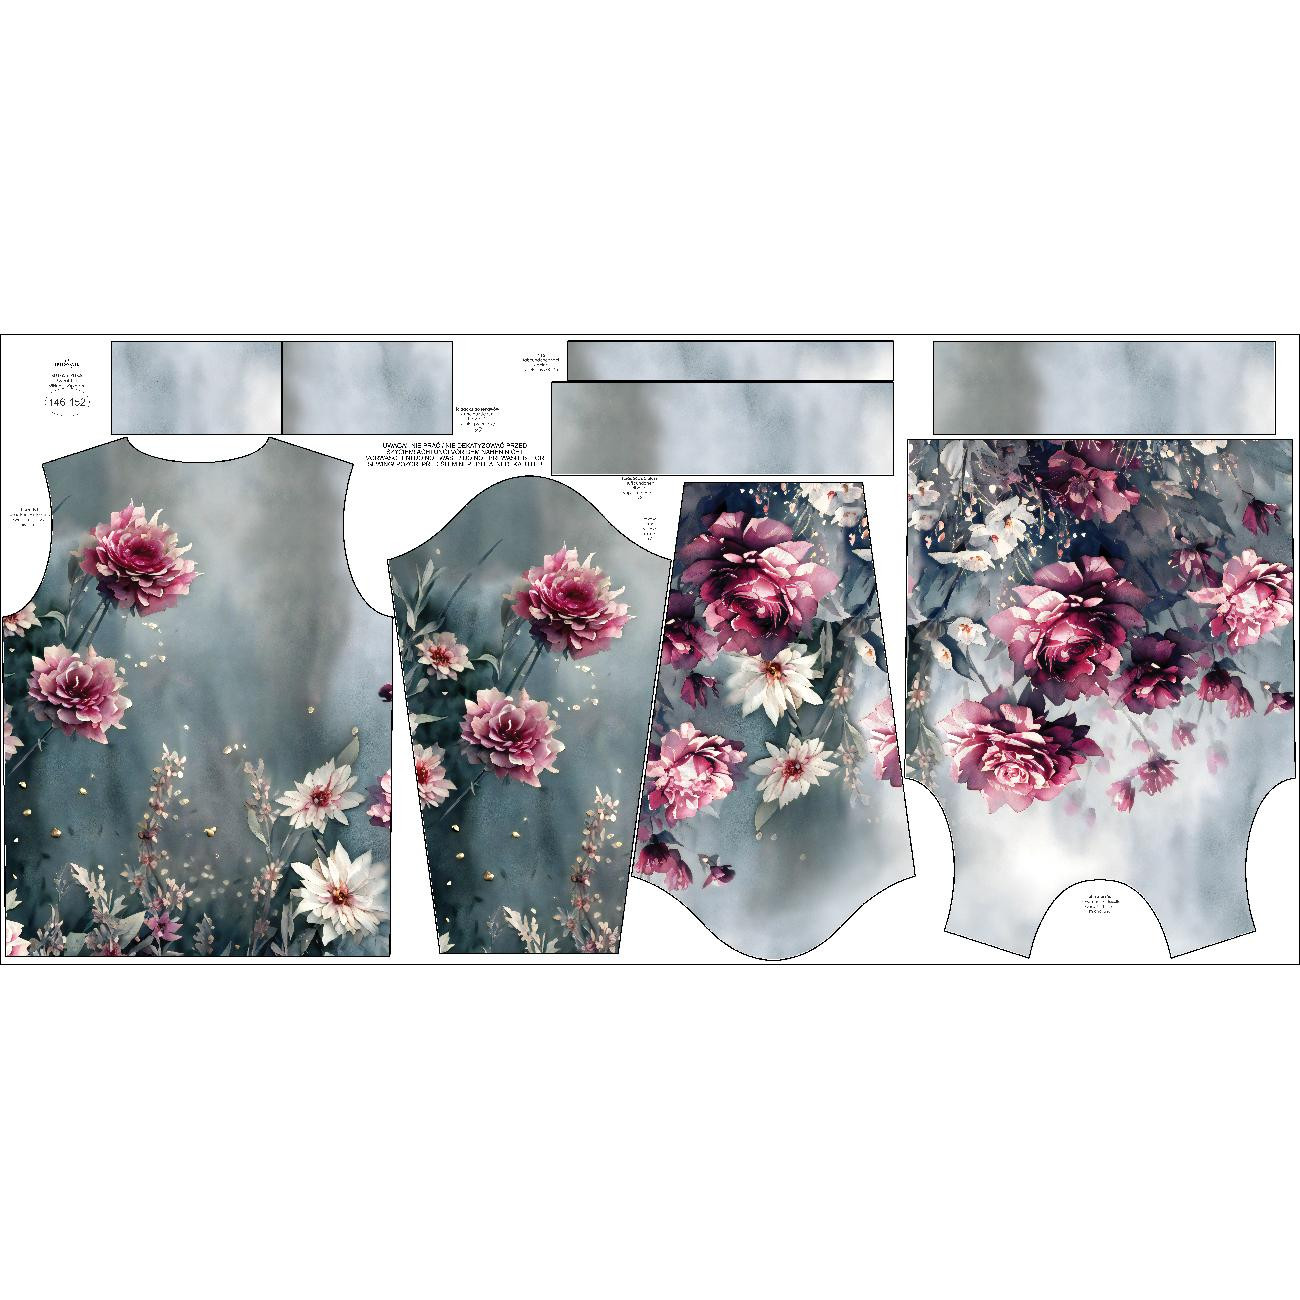 CHILDREN'S (NOE) SWEATSHIRT - VINTAGE FLOWERS PAT. 4 - sewing set